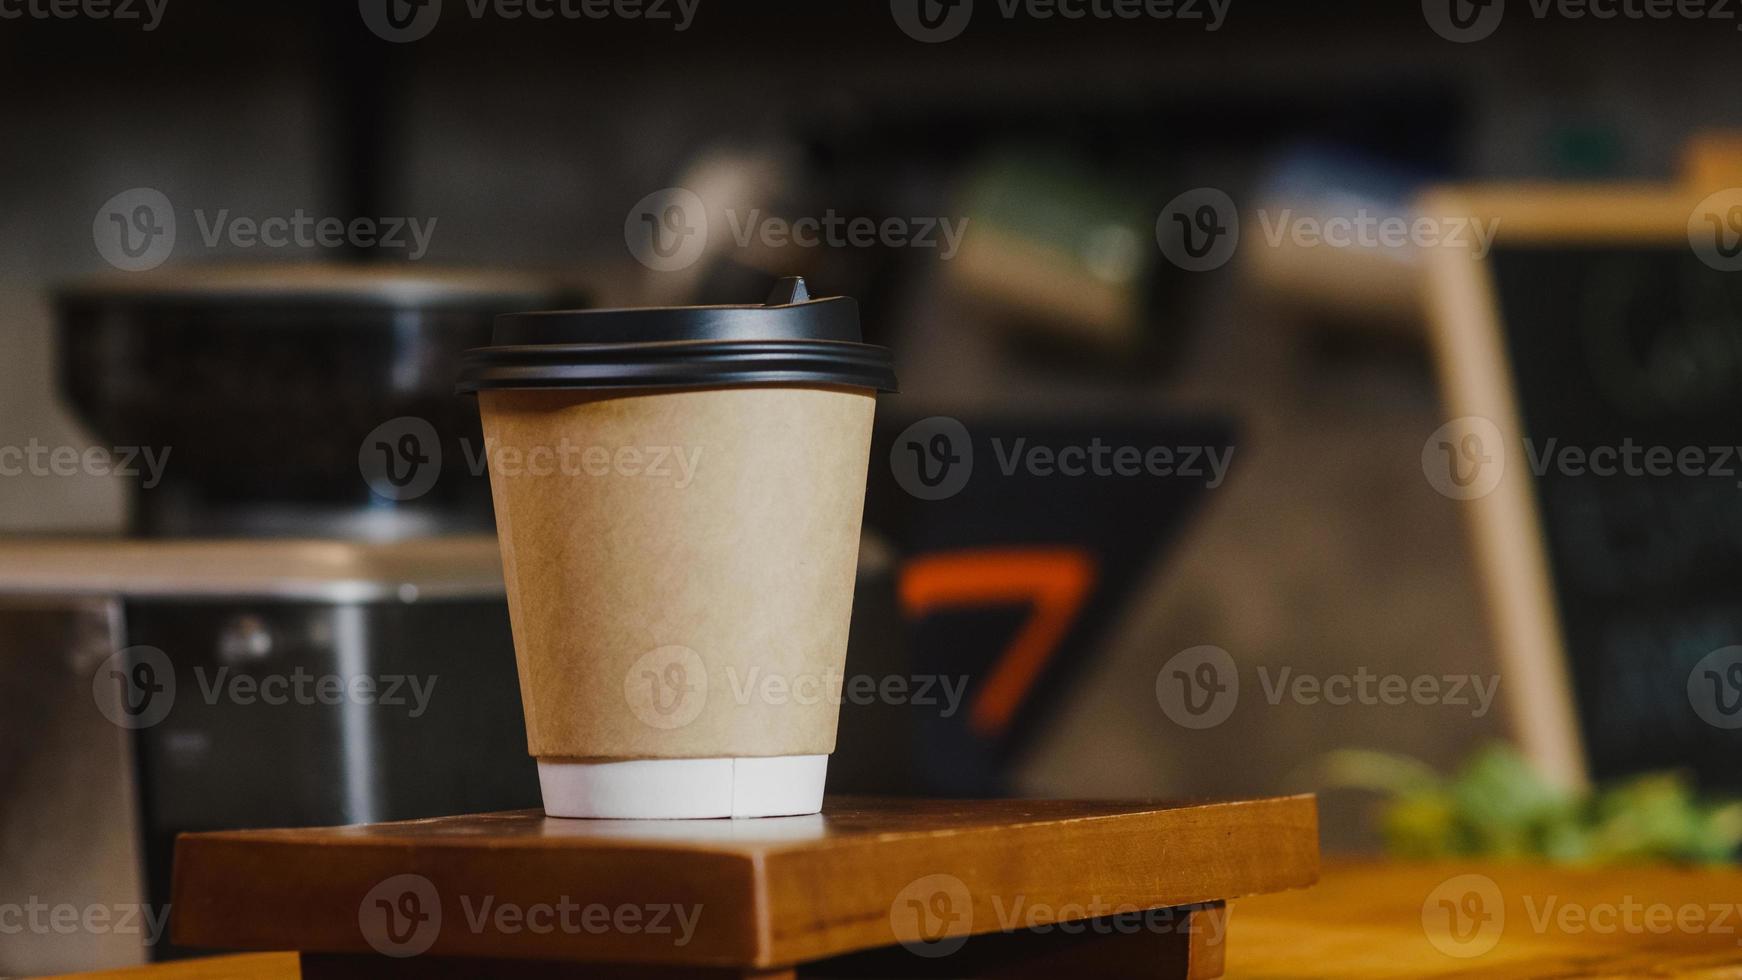 neem hete koffie papieren beker mee naar de consument die achter de toog staat in het café-restaurant. eigenaar klein bedrijf, eten en drinken, service mind concept. foto